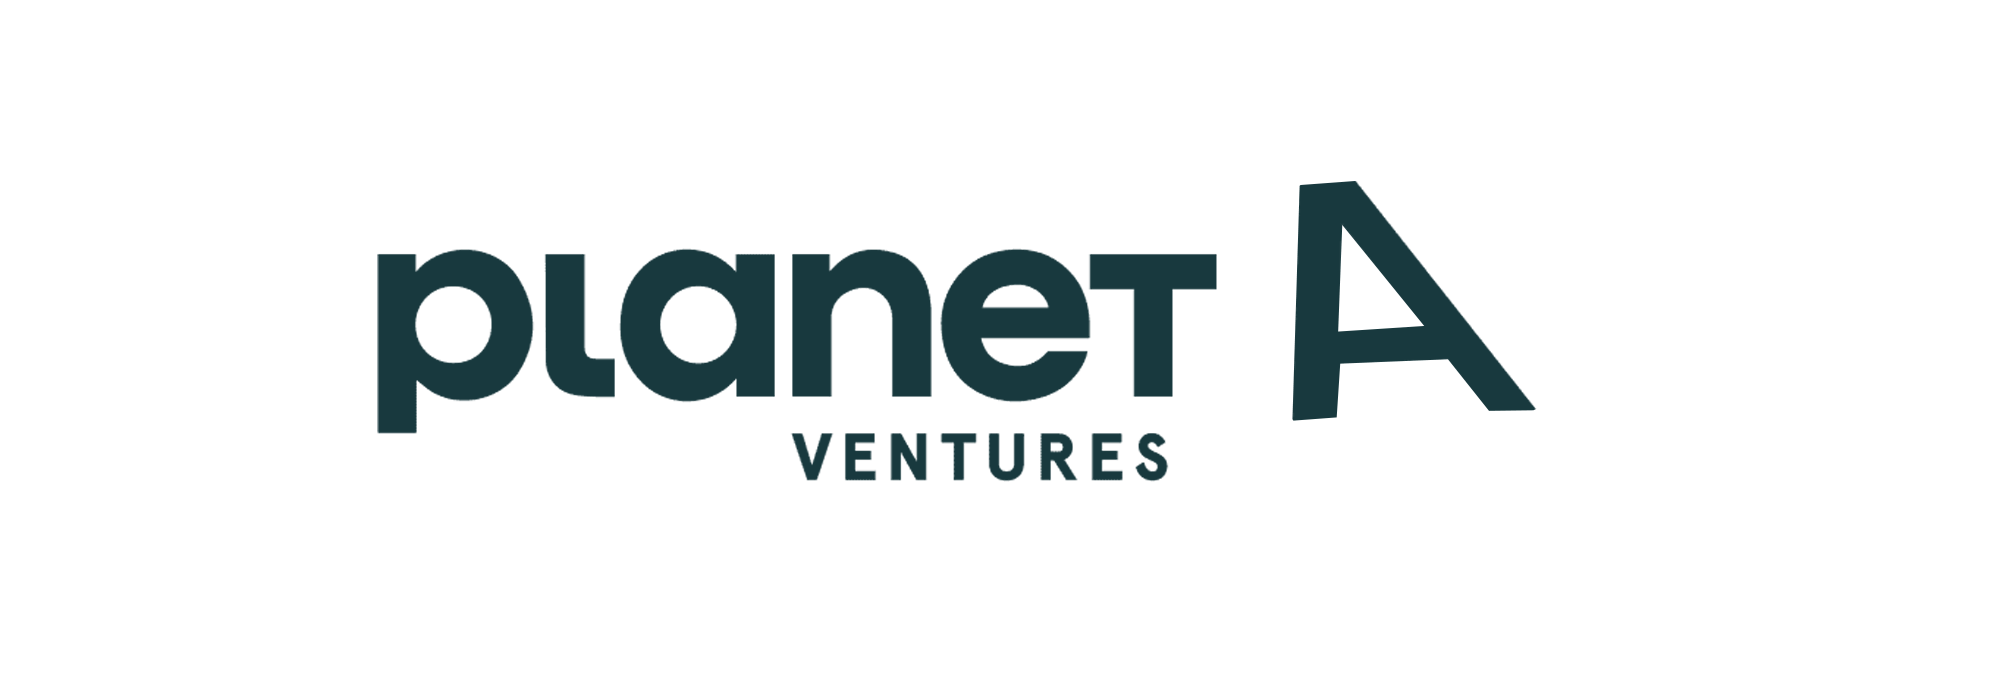 planet a ventures